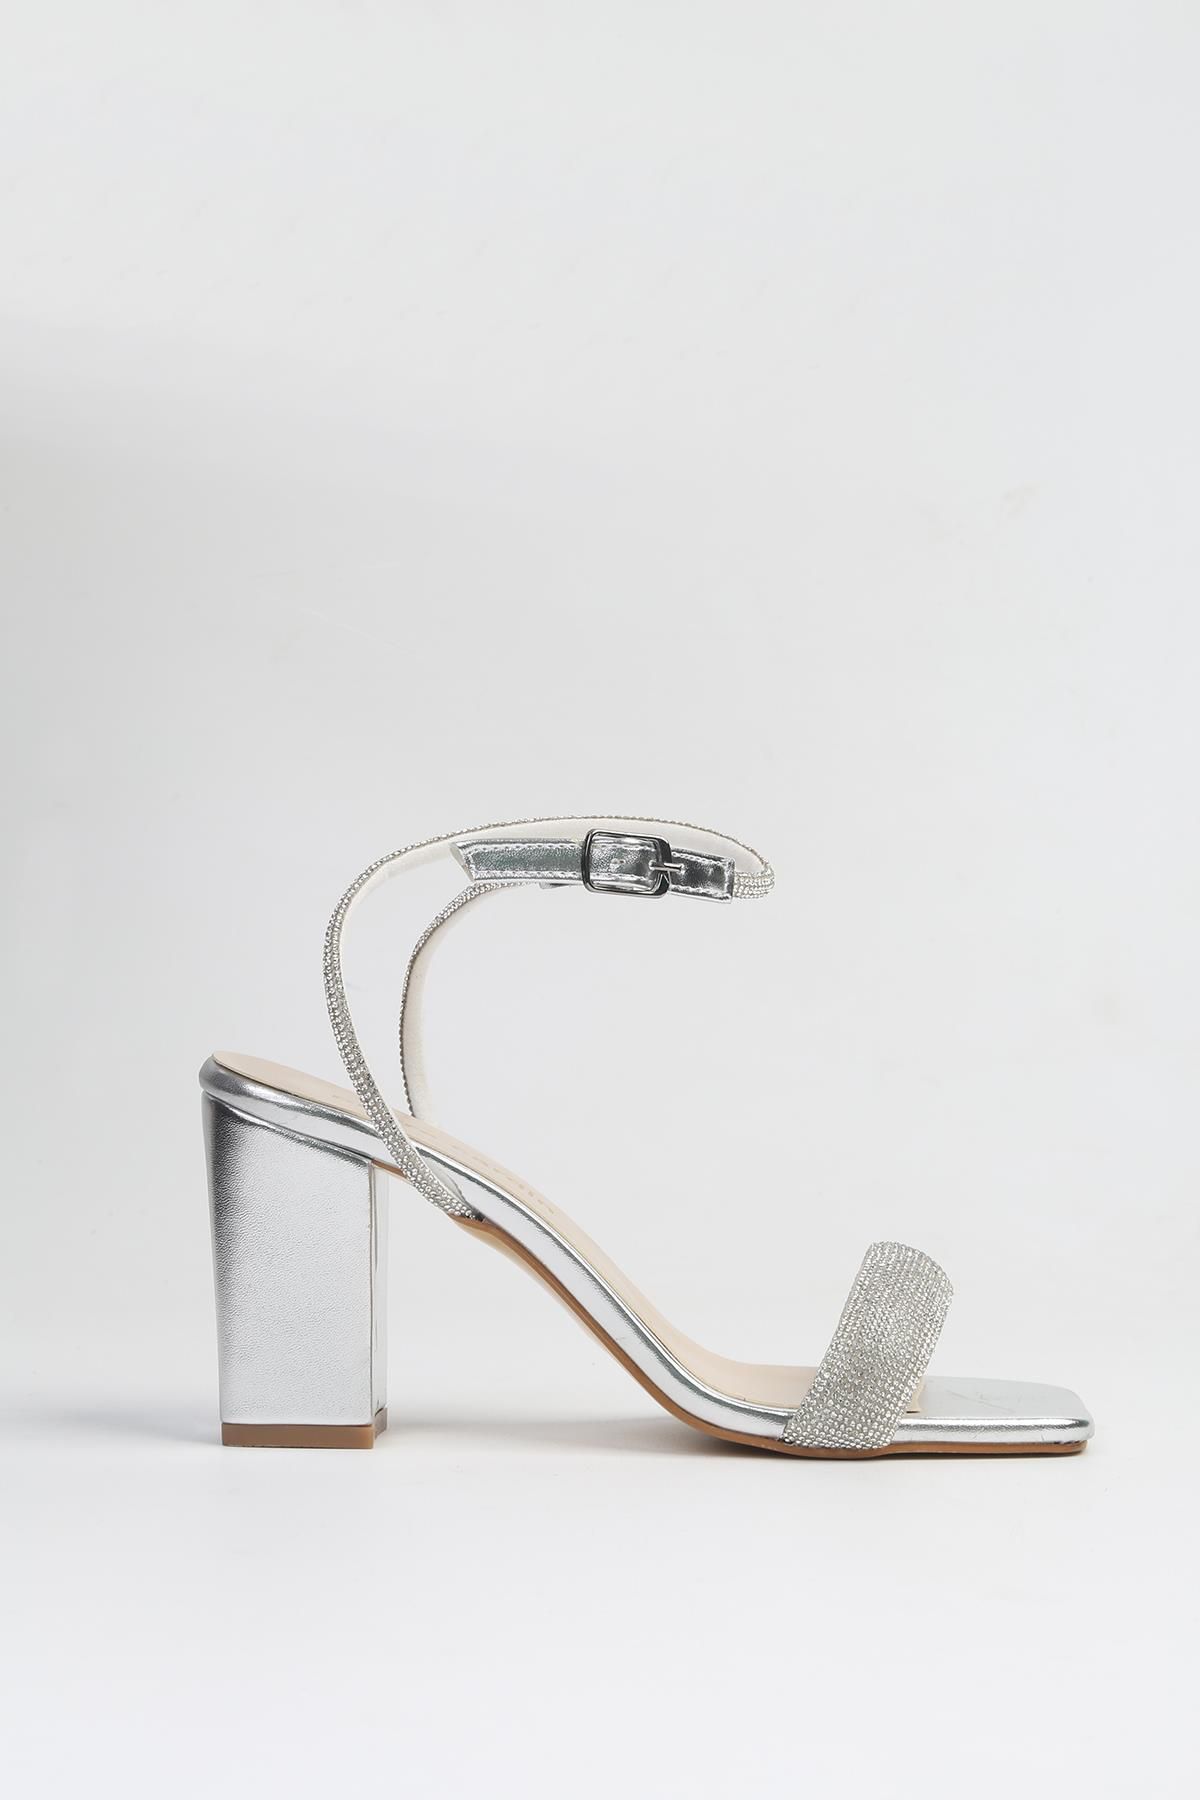 Pierre Cardin ® | PC-53056- 3959 Gümüş-Kadın Topuklu Ayakkabı